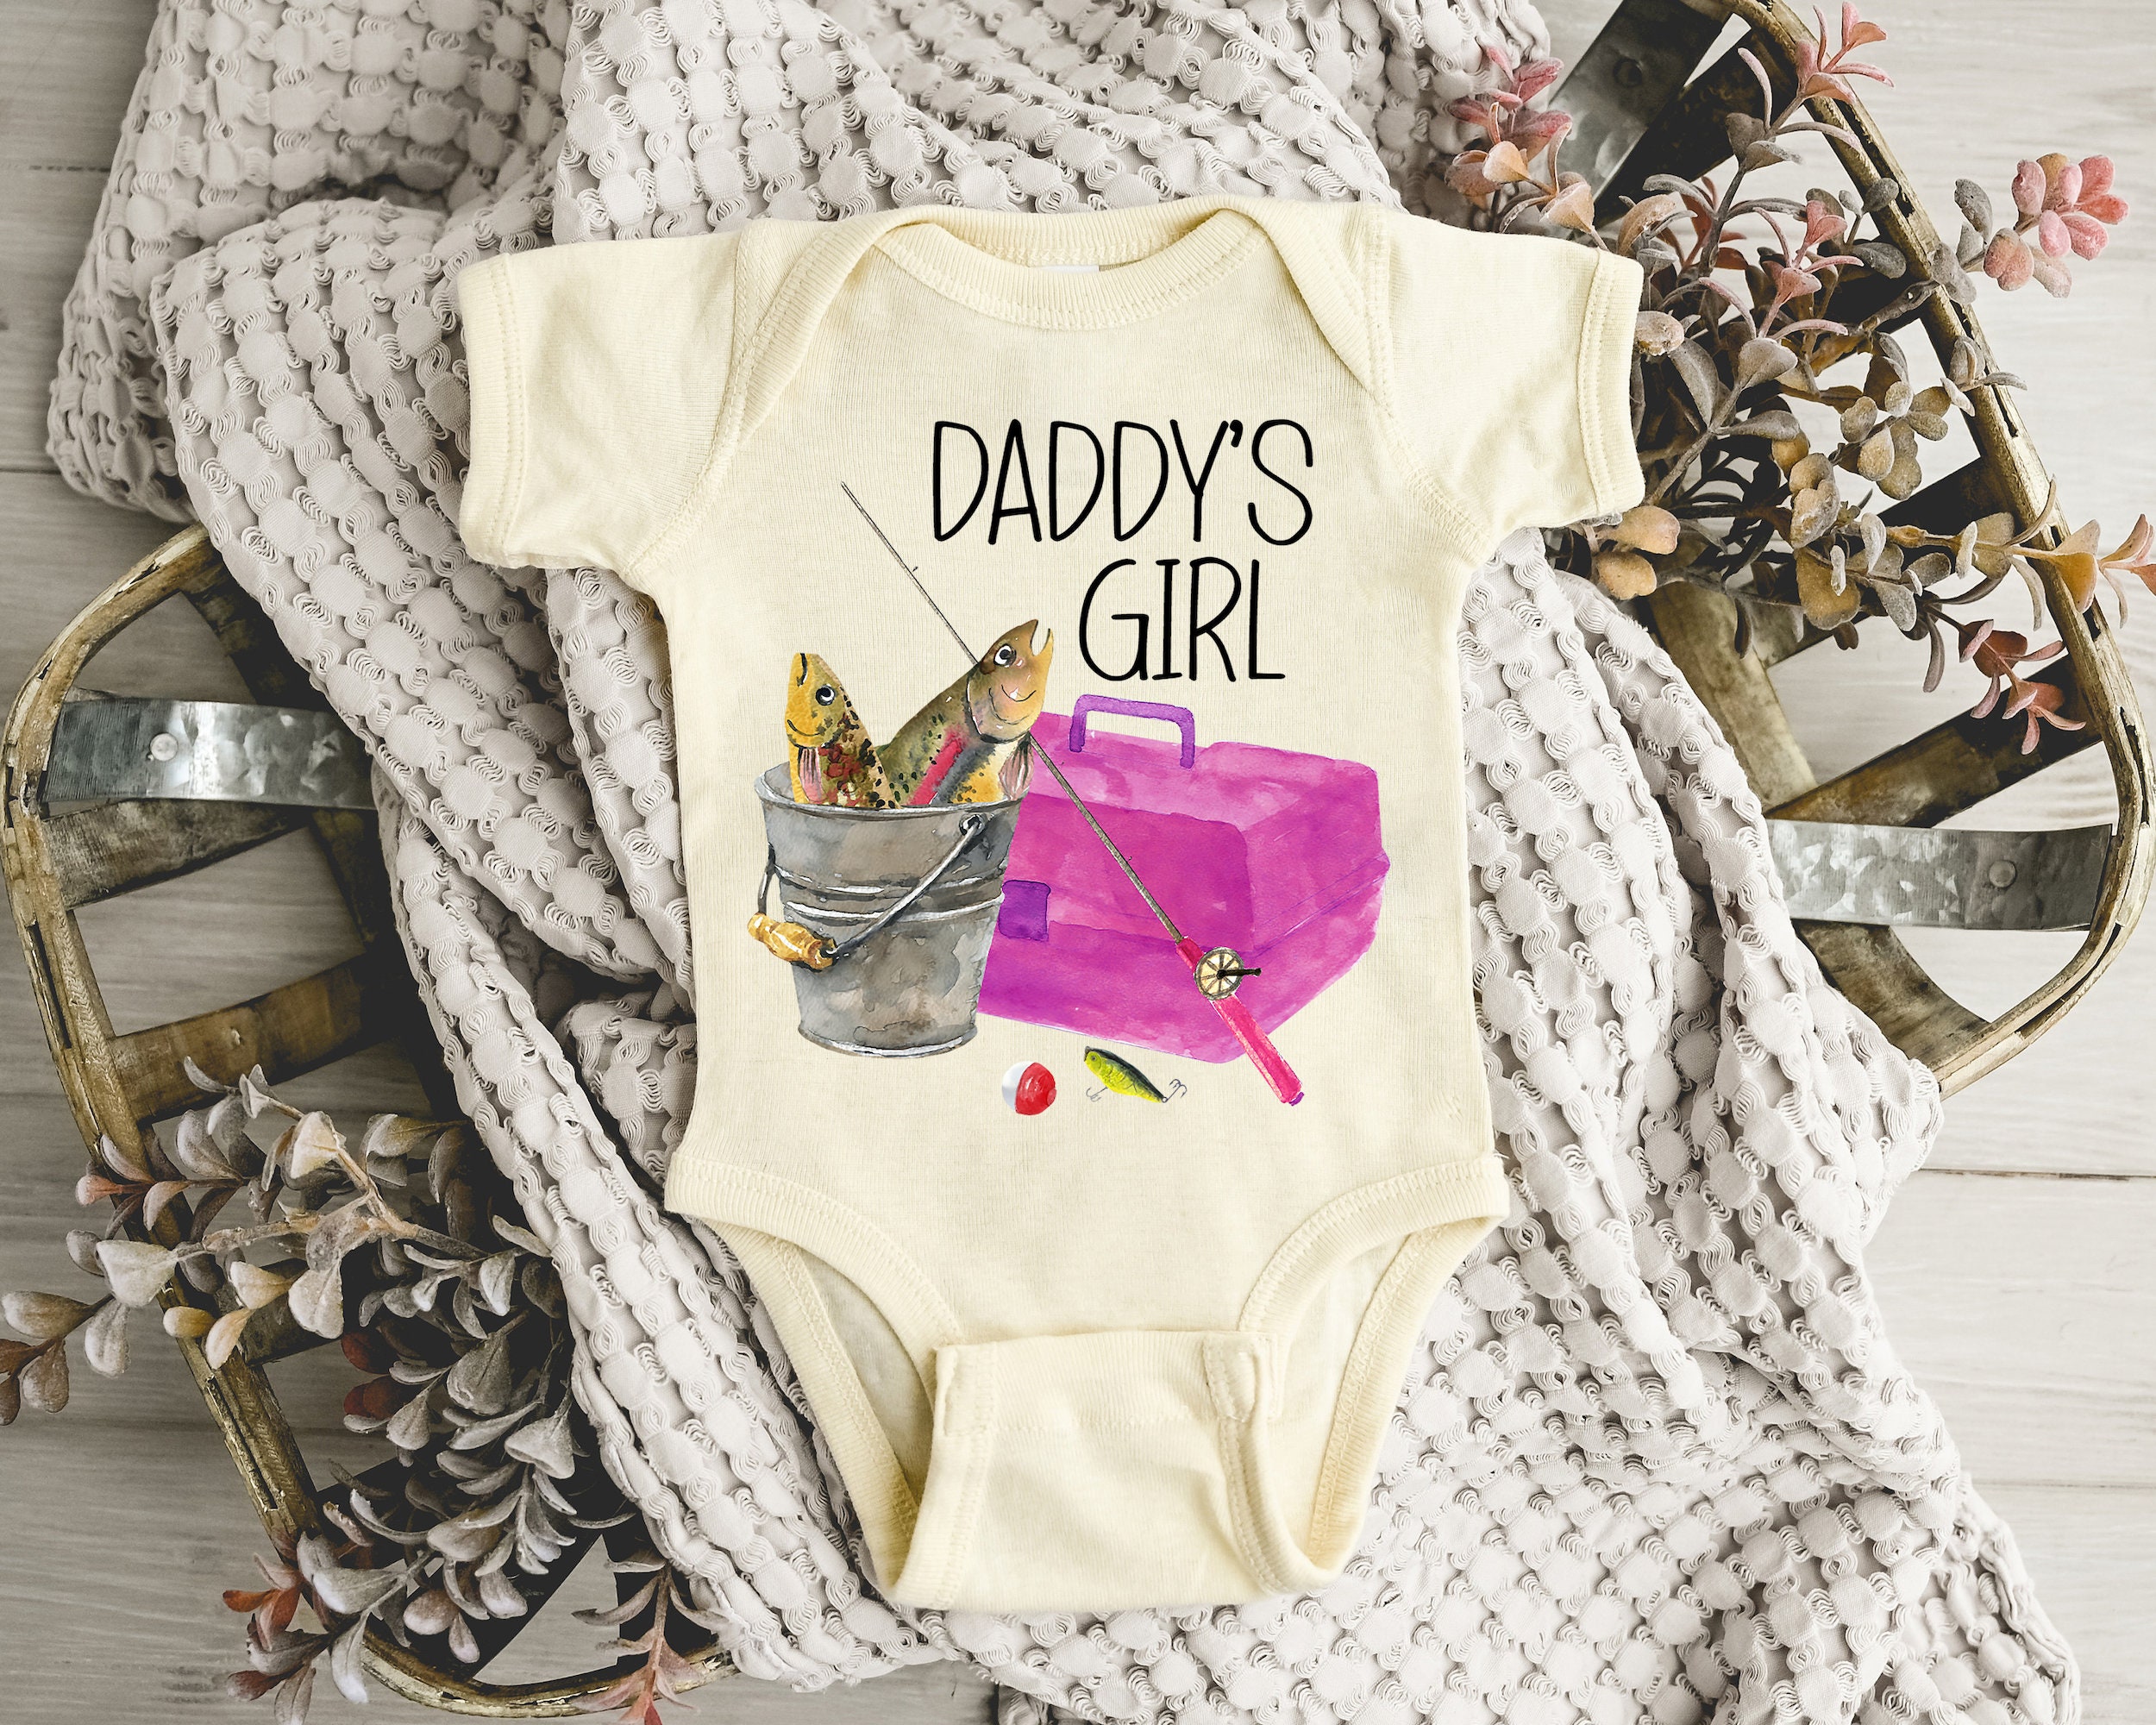 Baby Girls fish too! 🐟🐟 #daddygirl #fishing #nautical #babyshower #d